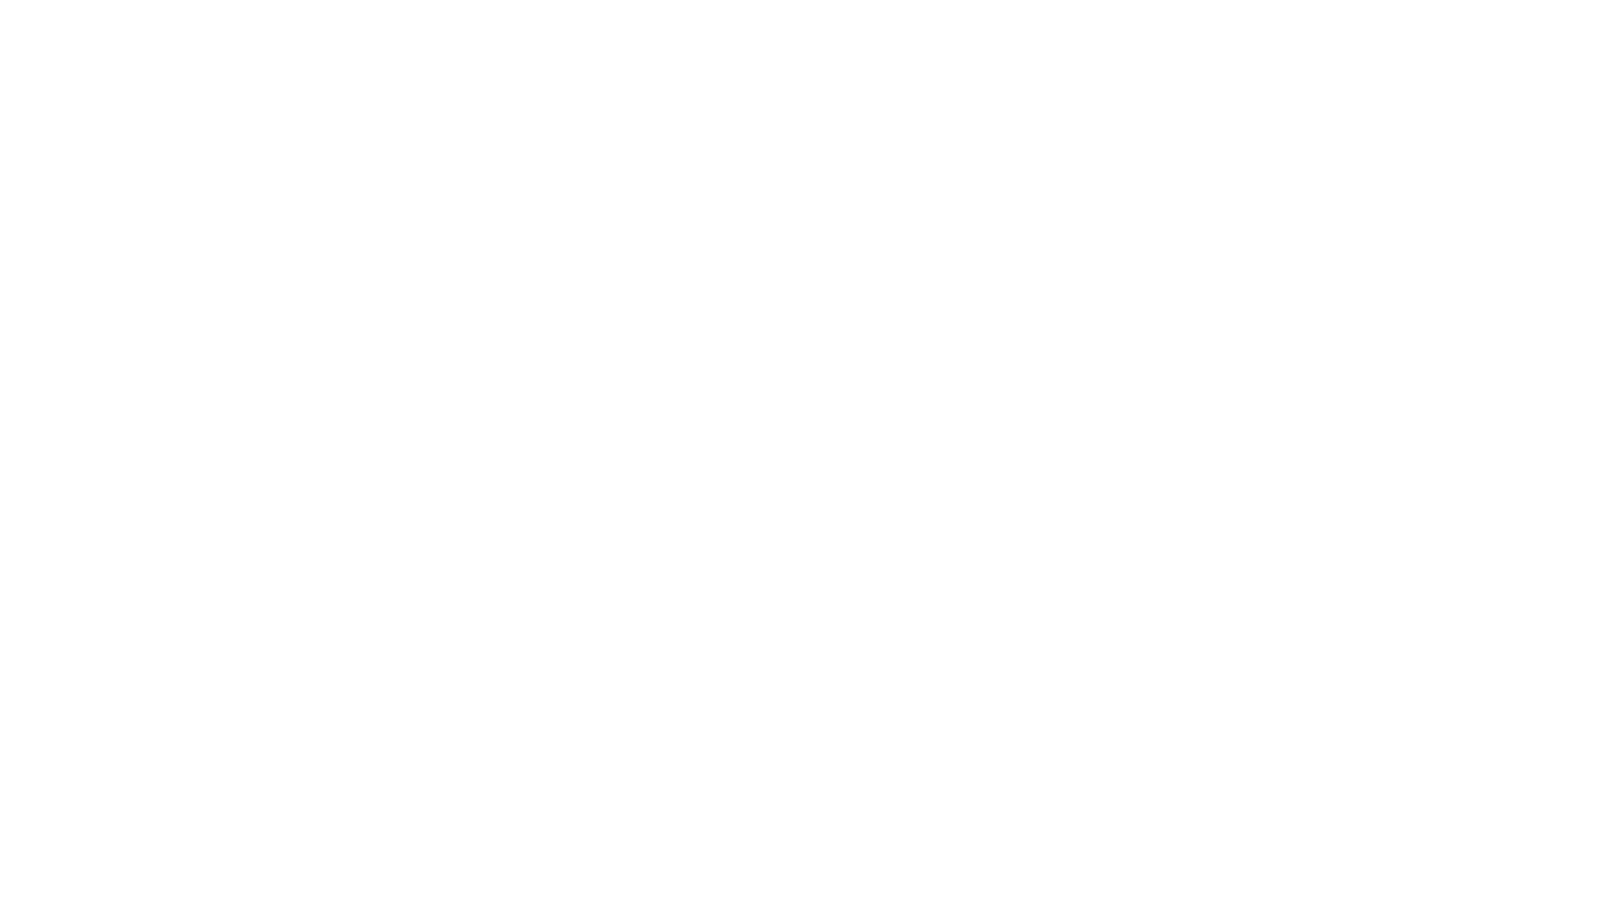 Extraction of Pus  in the CBD | ইআরসিপির এর মাধ্যমে পিত্ত নালী থেকে পুঁজ  অপসারণ Dr Masfique 

পিত্তনালীর পাথর কীভাবে অপারেশন করে? পিত্তনালীর পাথর হলে করনীয় কি?

বিনা অপারেশনে ই আর সি পি (ERCP) এর মাধ্যমে সার্জিক্যাল
জন্ডিস এর চিকিৎসা।
* পিত্তথলির পাথর যখন পিত্তনালীতে যেয়ে আটকে যায়,
তখন পিত্তনালীর পাথর পিত্তরস প্রবাহে বাধা দেয় এবং জন্ডিস দেখা দেয়।
* ই আর সি পি (ERCP) এর মাধ্যমে পিত্তনালীর পাথর অপসারন
পিত্তনালীতে পাথর হওয়ার উপসর্গ সমূহঃ পেটে ব্যাথা,
জন্ডিস (চোখ হলুদ হয়ে যাওয়া), বমি বমি ভাব, বমি হওয়া
পিত্তথলি ও পিত্তনালীতে পাথর হয়ে জন্ডিস হওয়া

Dr. Masfique Ahmed Bhuiyan
MBBS (DMC), BCS (Health) FCPS (Surgery)
Assistant Professor
Surgical Gastroenterology
Laparoscopic and Intervention Endoscopic Surgeon
Dhaka Medical College Hospital, Dhaka.
BMDC Reg: A-49785
MEMBERS OF 
SAGES (Society of American Gastrointestinal and Endoscopic Surgeons)
WEO (World Endoscopy Organisation)
ELSA (Endo-Laparoscopy Society Asia)
AMASI (Association of Minimal Access Surgeons of India)
SELSB (Society of Endo-Laparoscopic Surgeons of Bangladesh)
SOSB (Society of Surgeons of Bangladesh)
SPECIALIZED INTERVENTION ENDOSCOPY UNIT
Health and Hope Hospital
4th Floor, 152/2/g Green Road, Phanthopoth, Dhaka-1205, Bangladesh
Phone Number : 01310117406, 01317711059.01936427002
#Dhaka_Ercp_center,
#ইআরসিপি ,#top_ERCP_Center,#Bd_top_Ercp_Center. 
#Dhaka_top_Endoscopy_Center.#Top_Endoscopy_Center_Bd
#Best_Enoscopy_Center_Dhaka
#ERCP_Stant_Removal, #CBD_Stone_Removal,#ERCP_stone_extraction_by_Dormia, 
#ERCP_stone, #ERCP_stone_extraction,#Dr.Masfique Ahmed Bhuiyan
BABY ERCP?
 #ইআরসিপি_কি?#স্পেশালাইজ_ইন্টারভেনশন_এন্ডোস্কপি_সেন্টার, #ডাঃ_মাশফিক_আহমেদ_ভুঁঞা ,
#Dhaka_Ercp_center,
#ইআরসিপি ,#top_ERCP_Center,#Bd_top_Ercp_Center. 
#Dhaka_top_Endoscopy_Center.#Top_Endoscopy_Center_Bd
#Best_Enoscopy_Center_Dhaka
#ERCP_Stant_Removal, #CBD_Stone_Removal,#ERCP_stone_extraction_by_Dormia, 
#ERCP_stone, #ERCP_stone_extraction,#Dr.Masfique Ahmed Bhuiyan
#what_is_ercp
#ercp_procedure
#what_is_stone_extraction_by_ercp